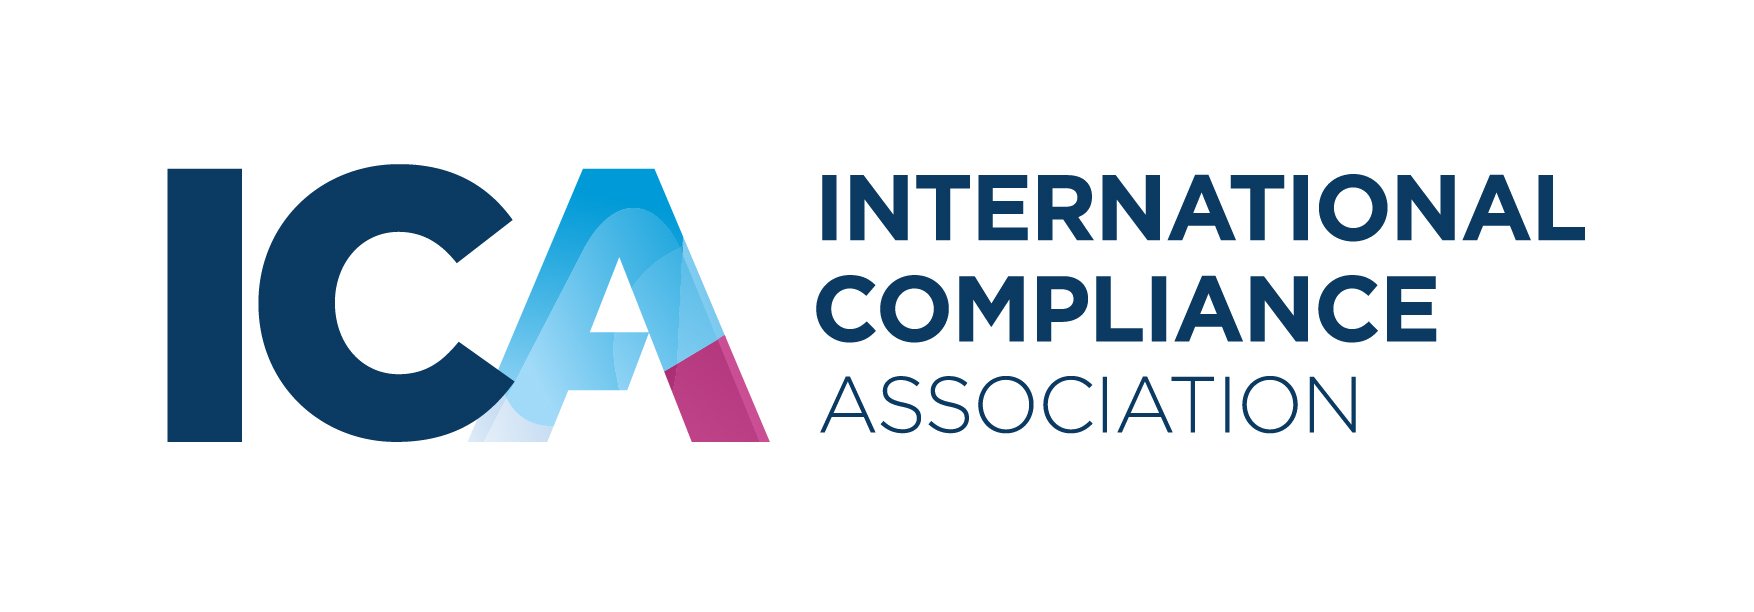 International Compliance Association logo